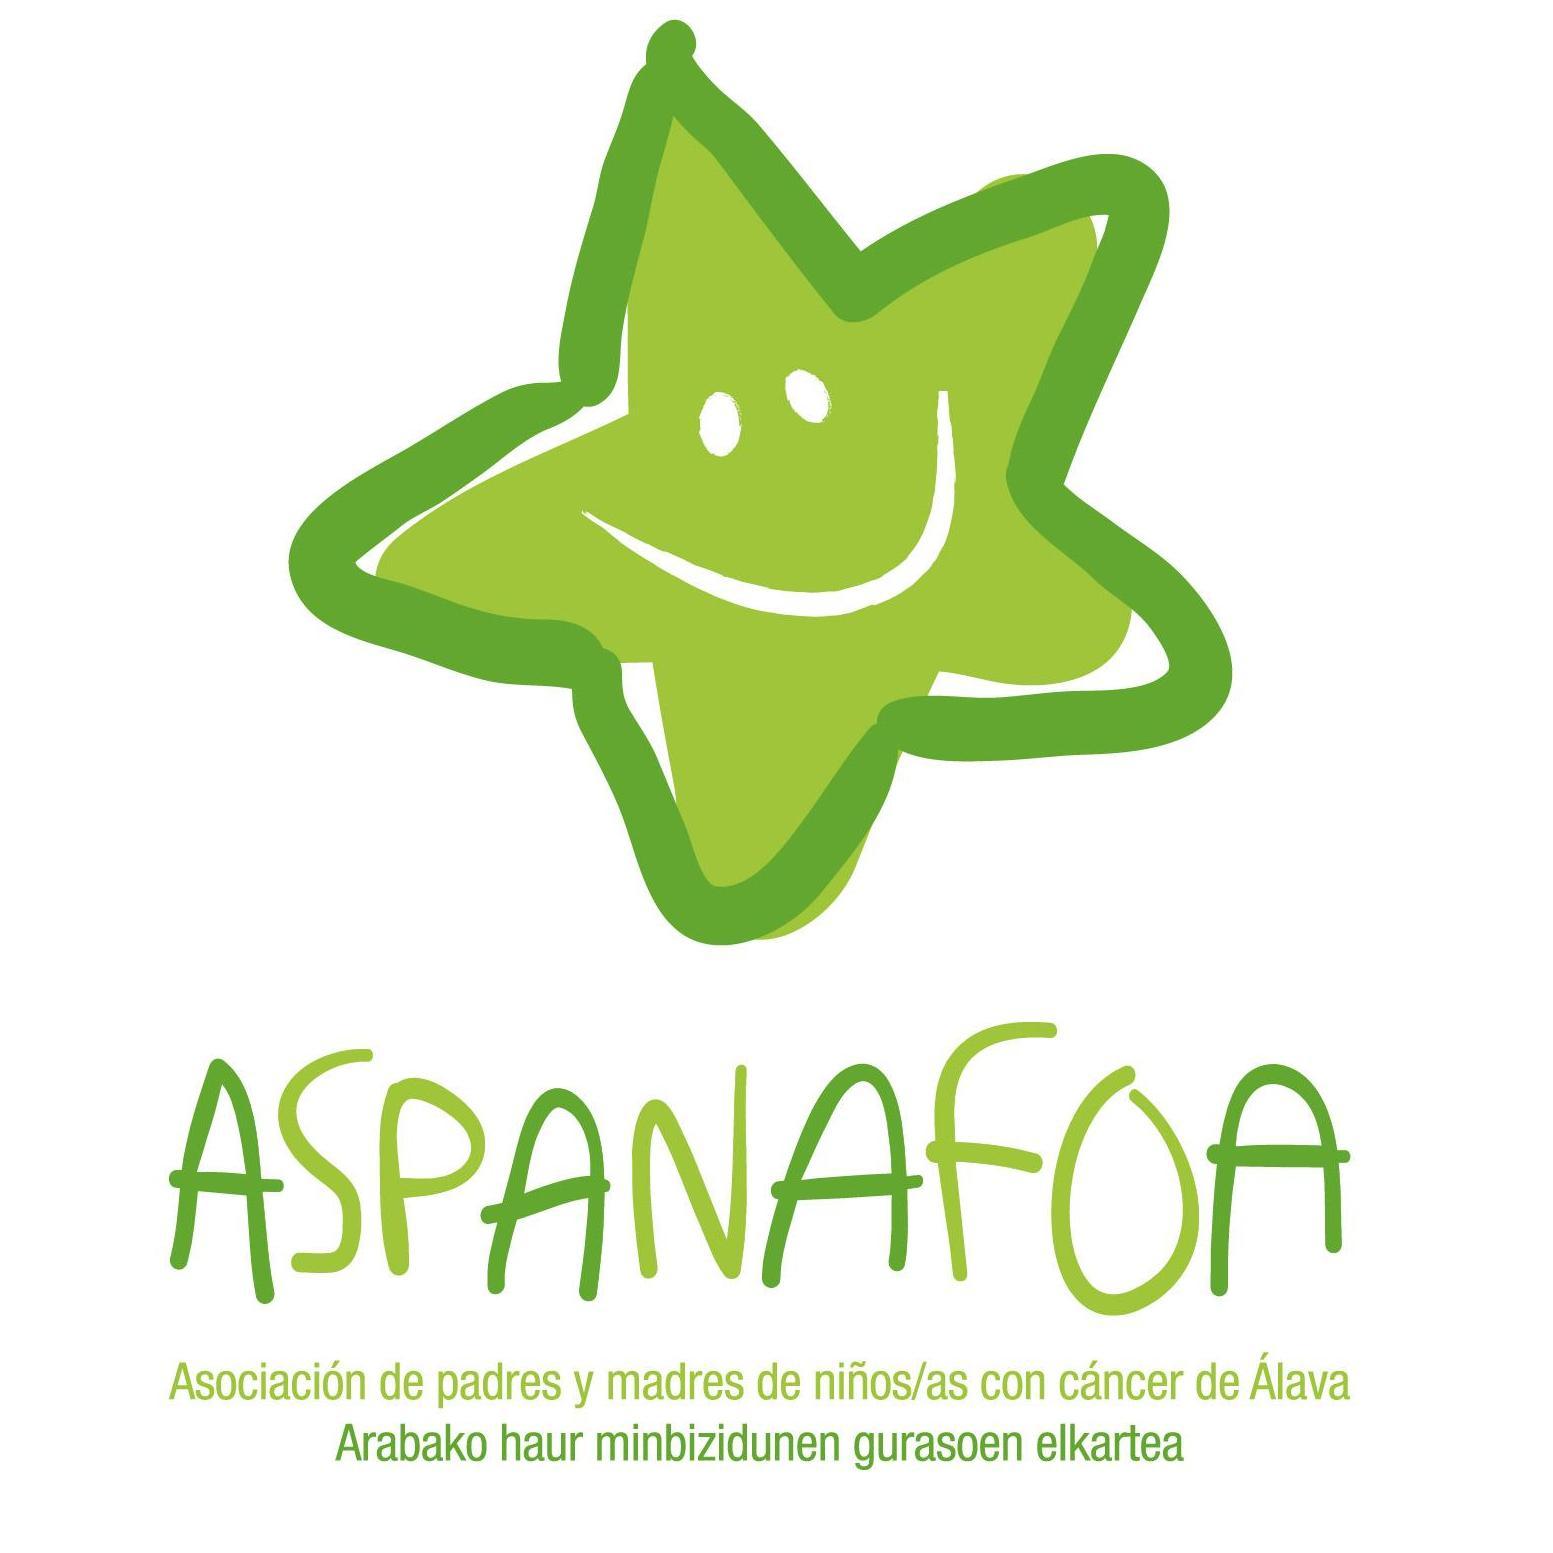 Aspanafoa - Asociación de Familias de Menores con Cáncer de Álava - El teu perfil. Vota, valora i comunica’t